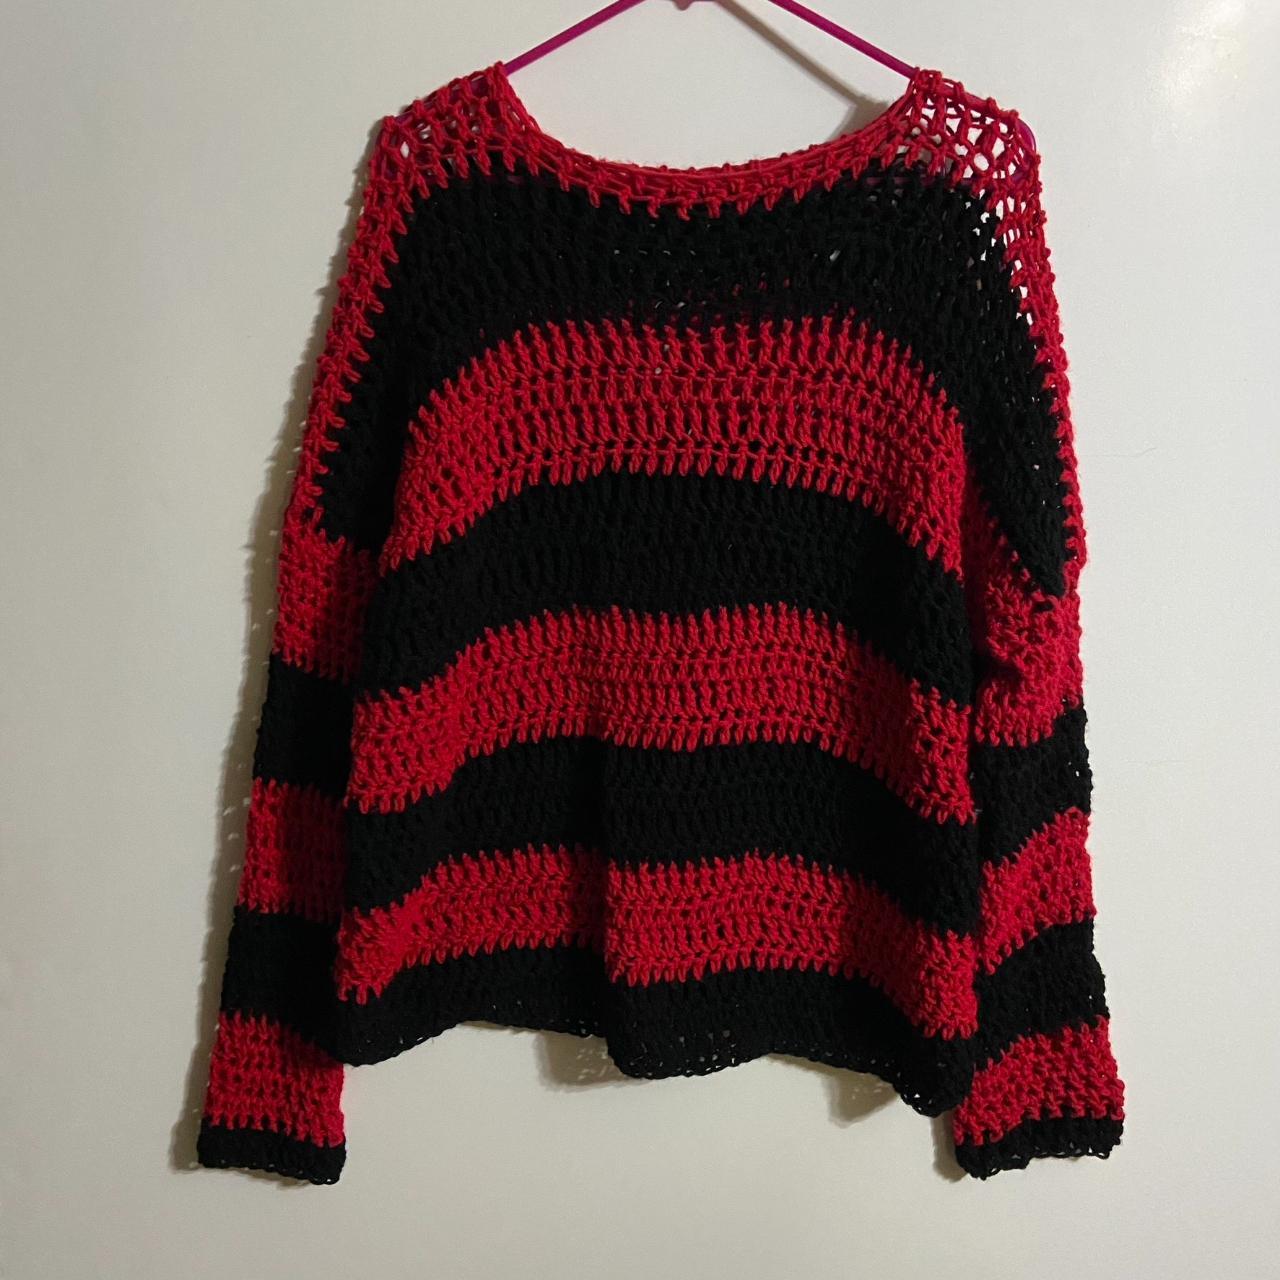 Crochet Marceline Inspired Sweater - Dm for custom... - Depop